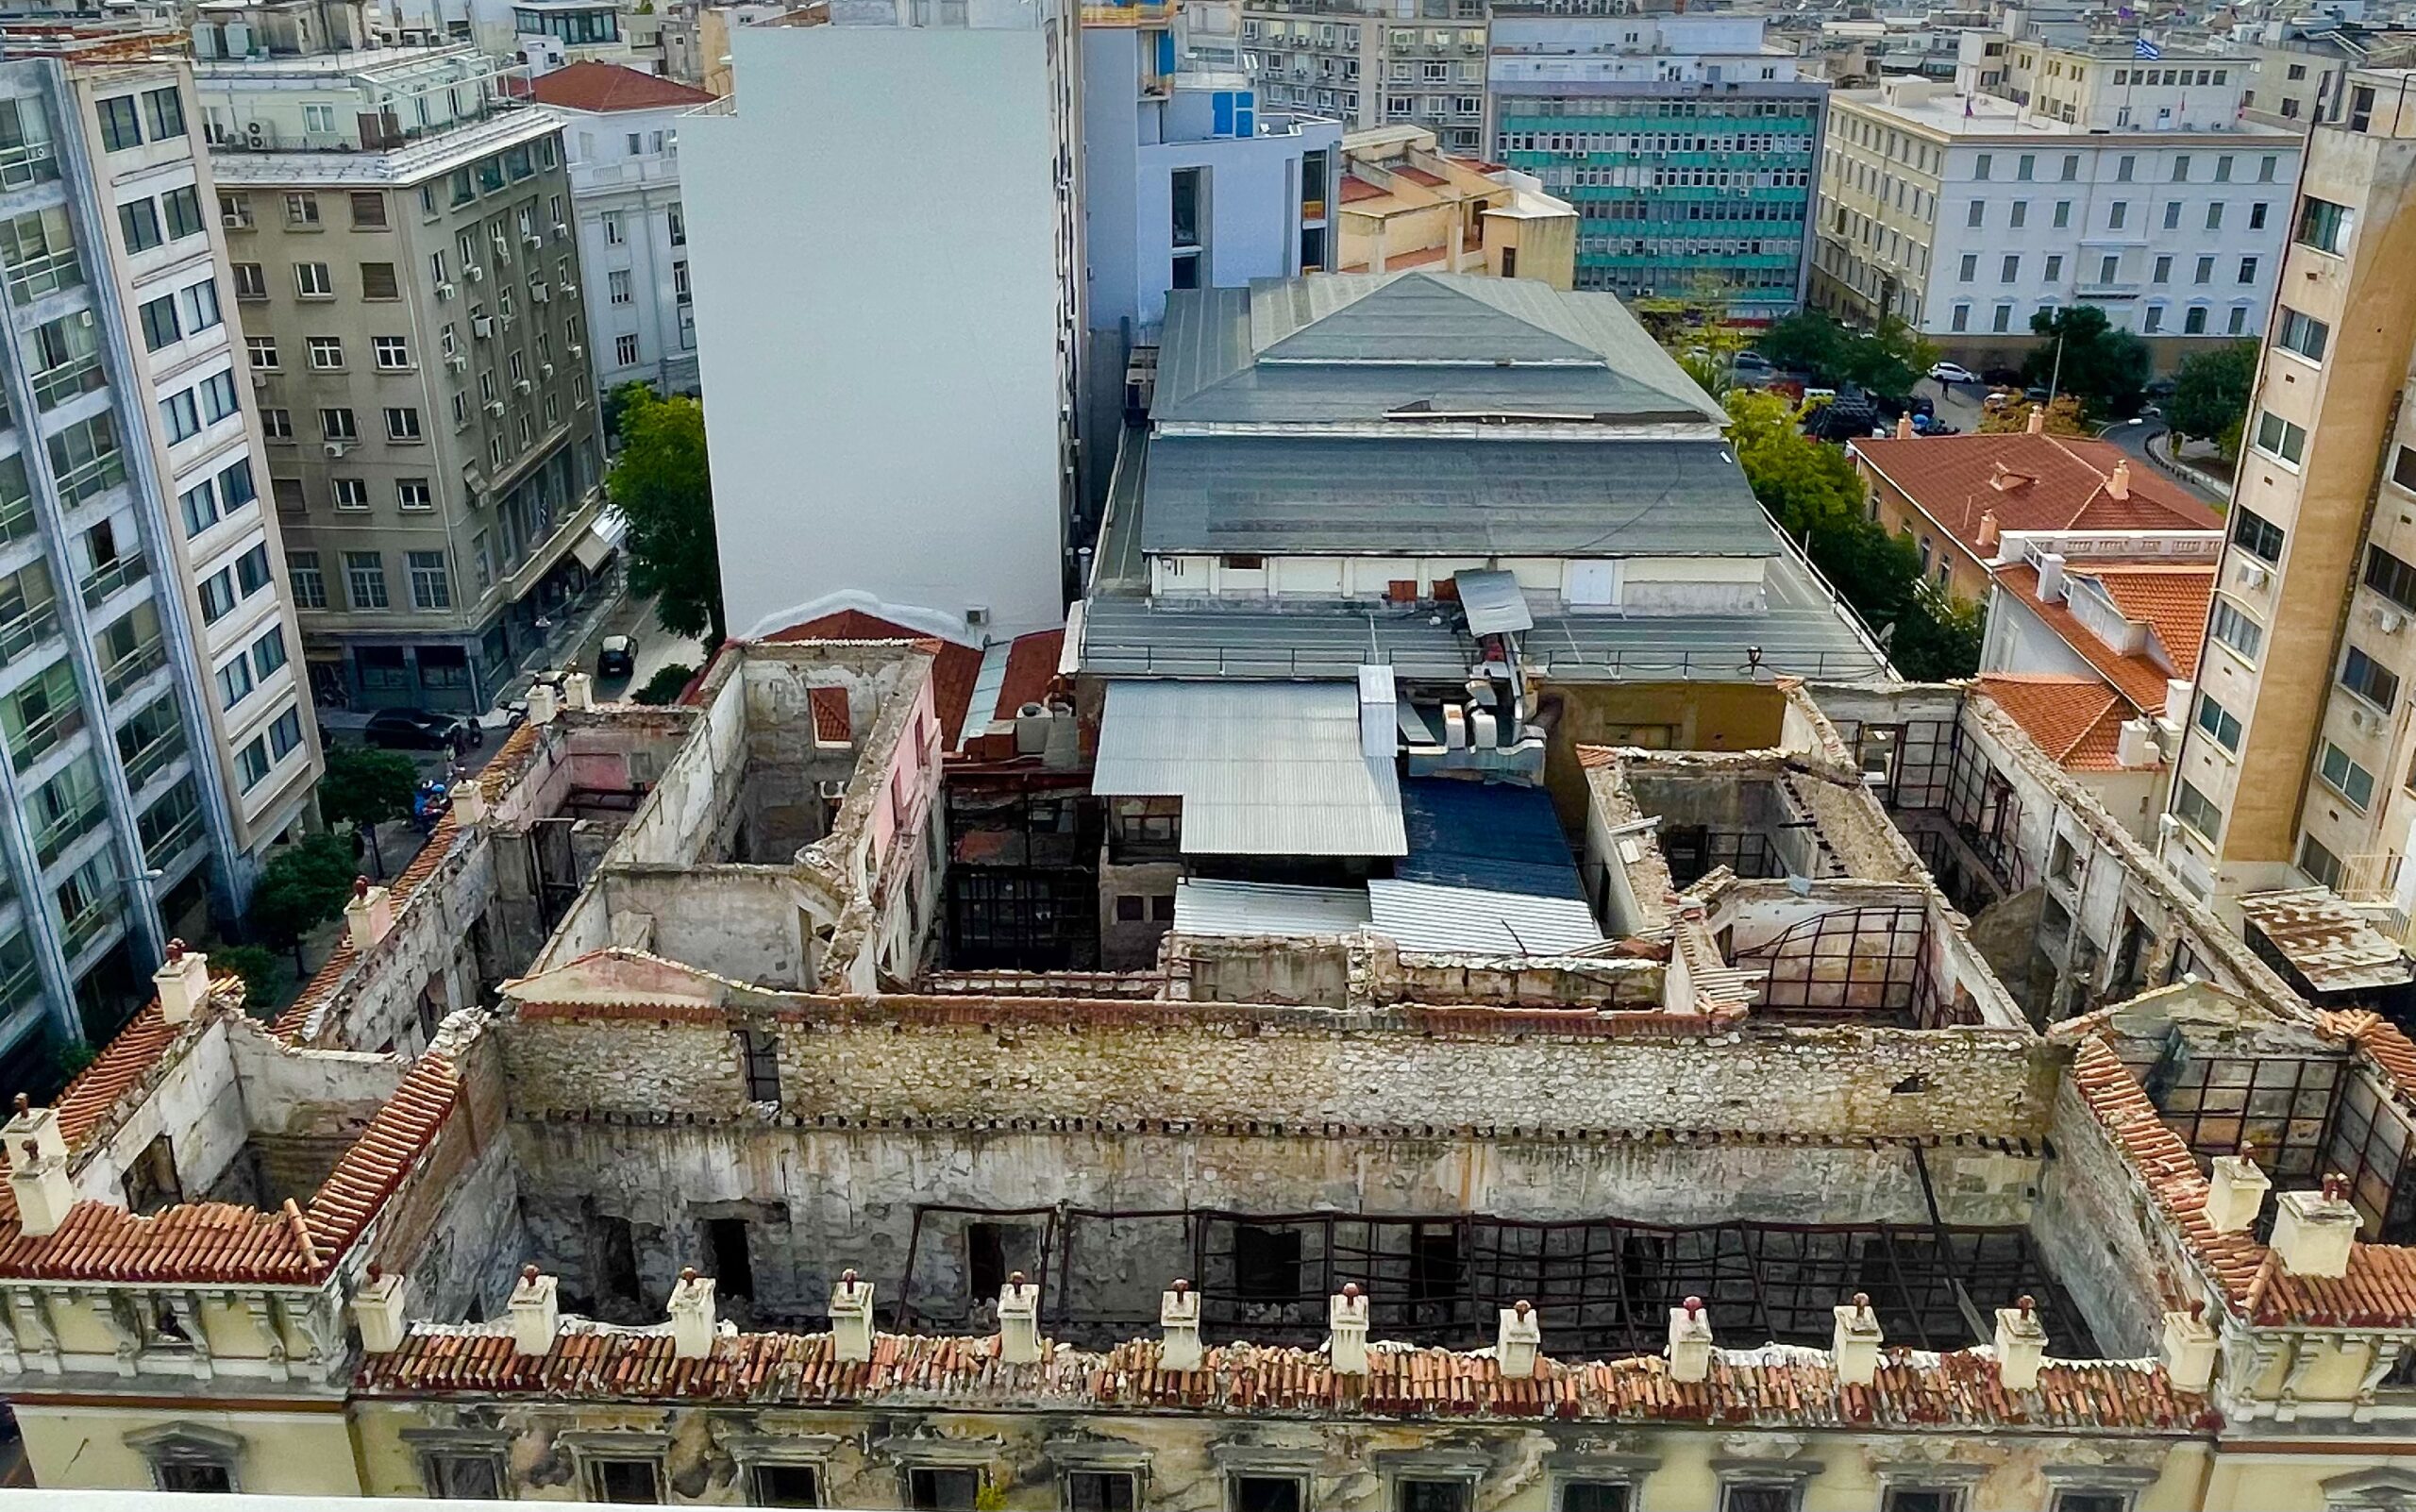 Μια νέα εποχή ξεκινά για το τετράγωνο που περικλείει τους ιστορικούς κινηματογράφους Αττικόν-Απόλλων στο κέντρο της Αθήνας